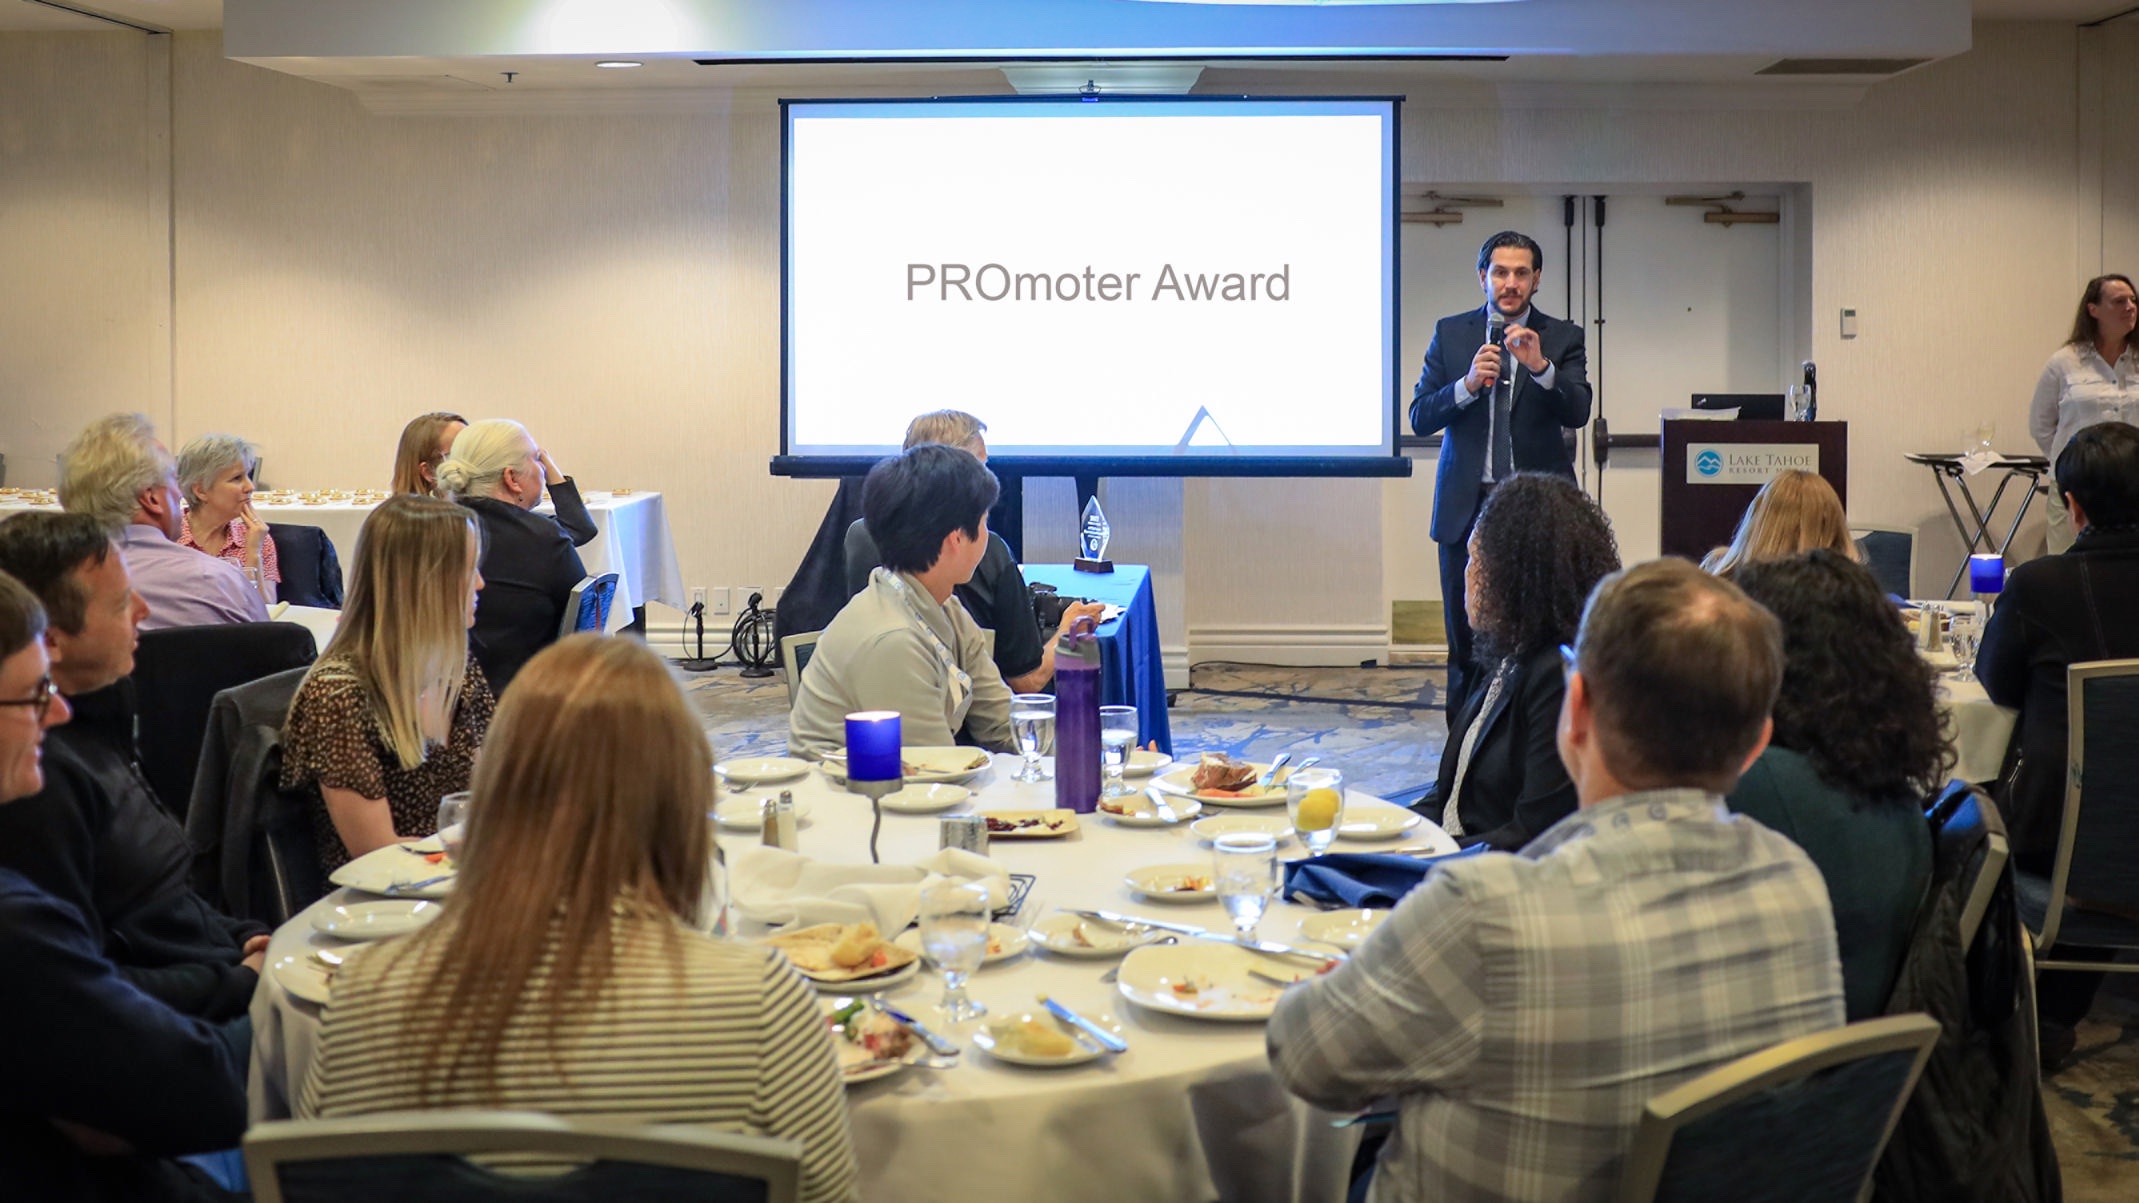 LTCC President Jeff DeFranco speaking after winning the PROmoter Award